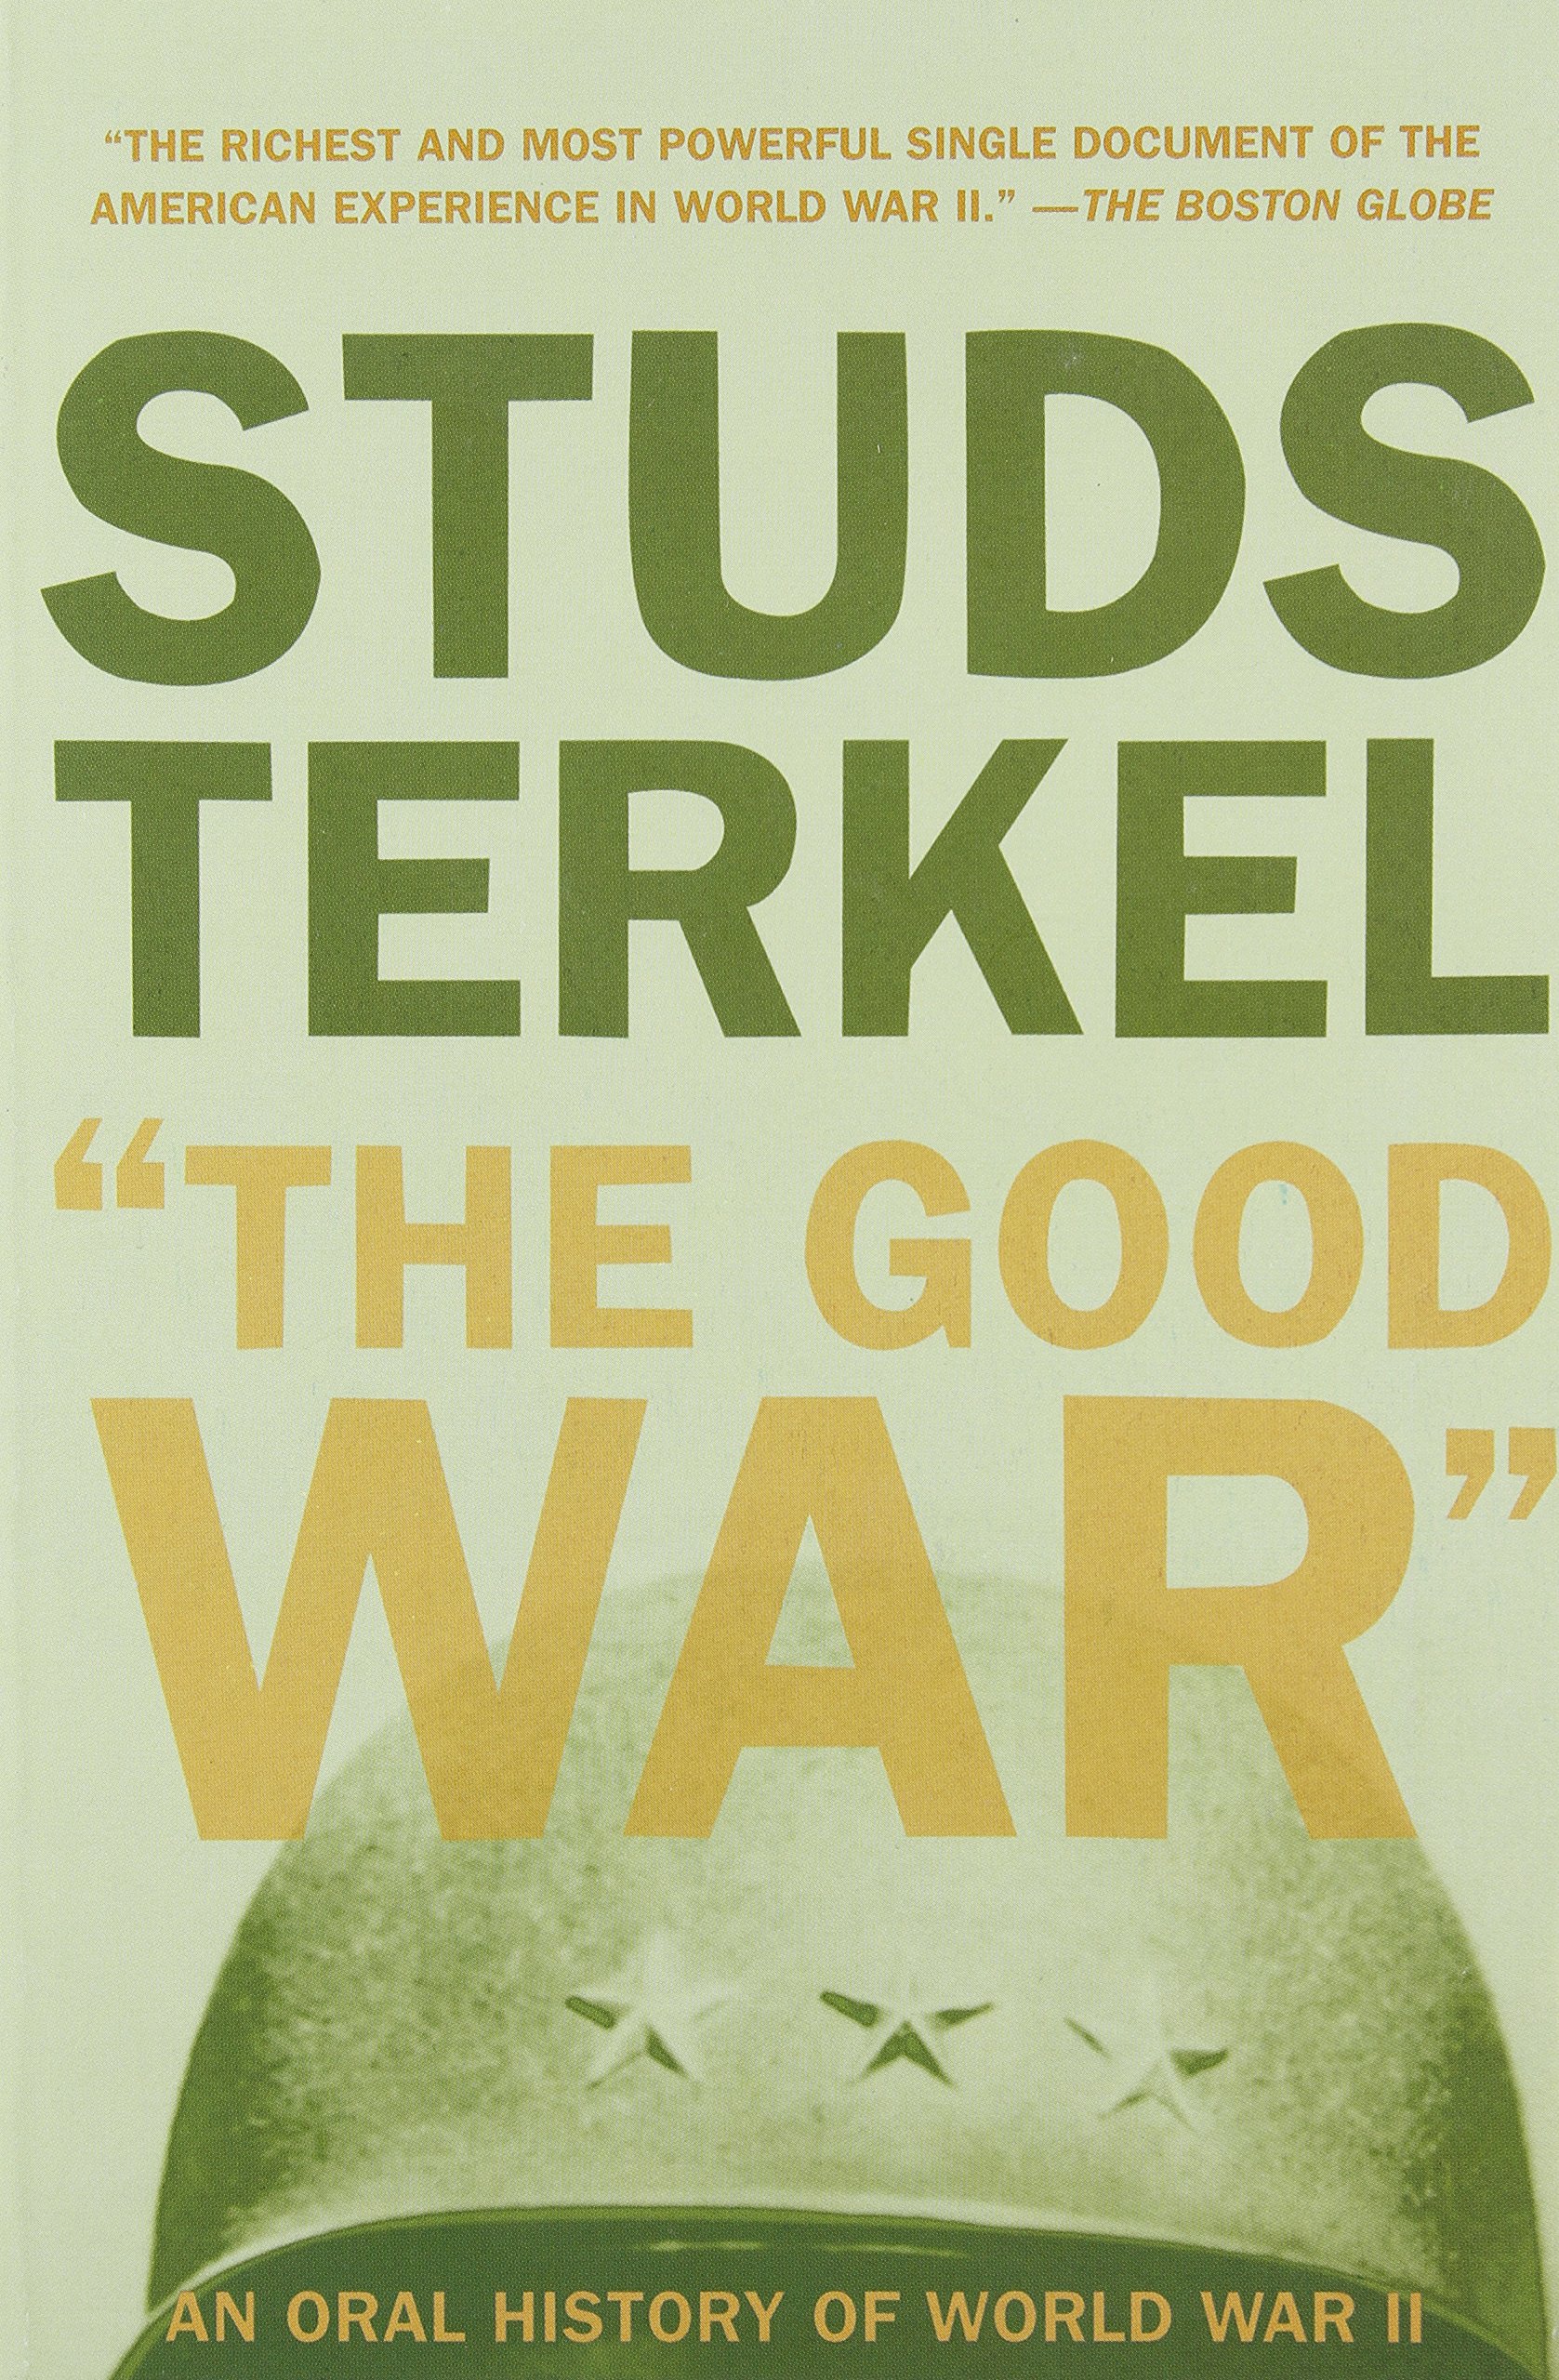 "The Good War" (1985, Ballantine Books)